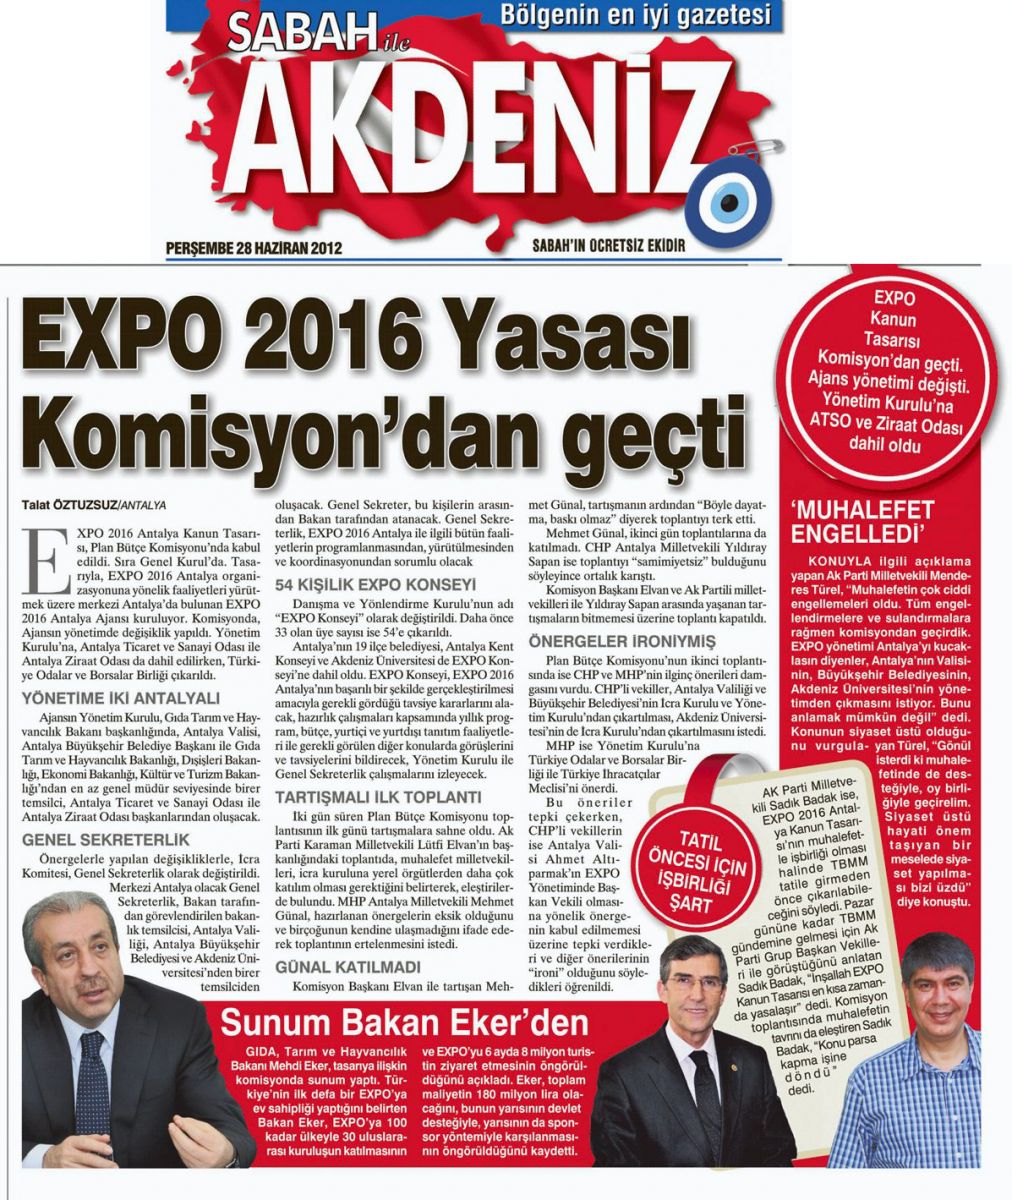 Sabah Akdeniz - Expo 2016 Yasası Komisyon'dan Geçti - 28 Haziran 2012